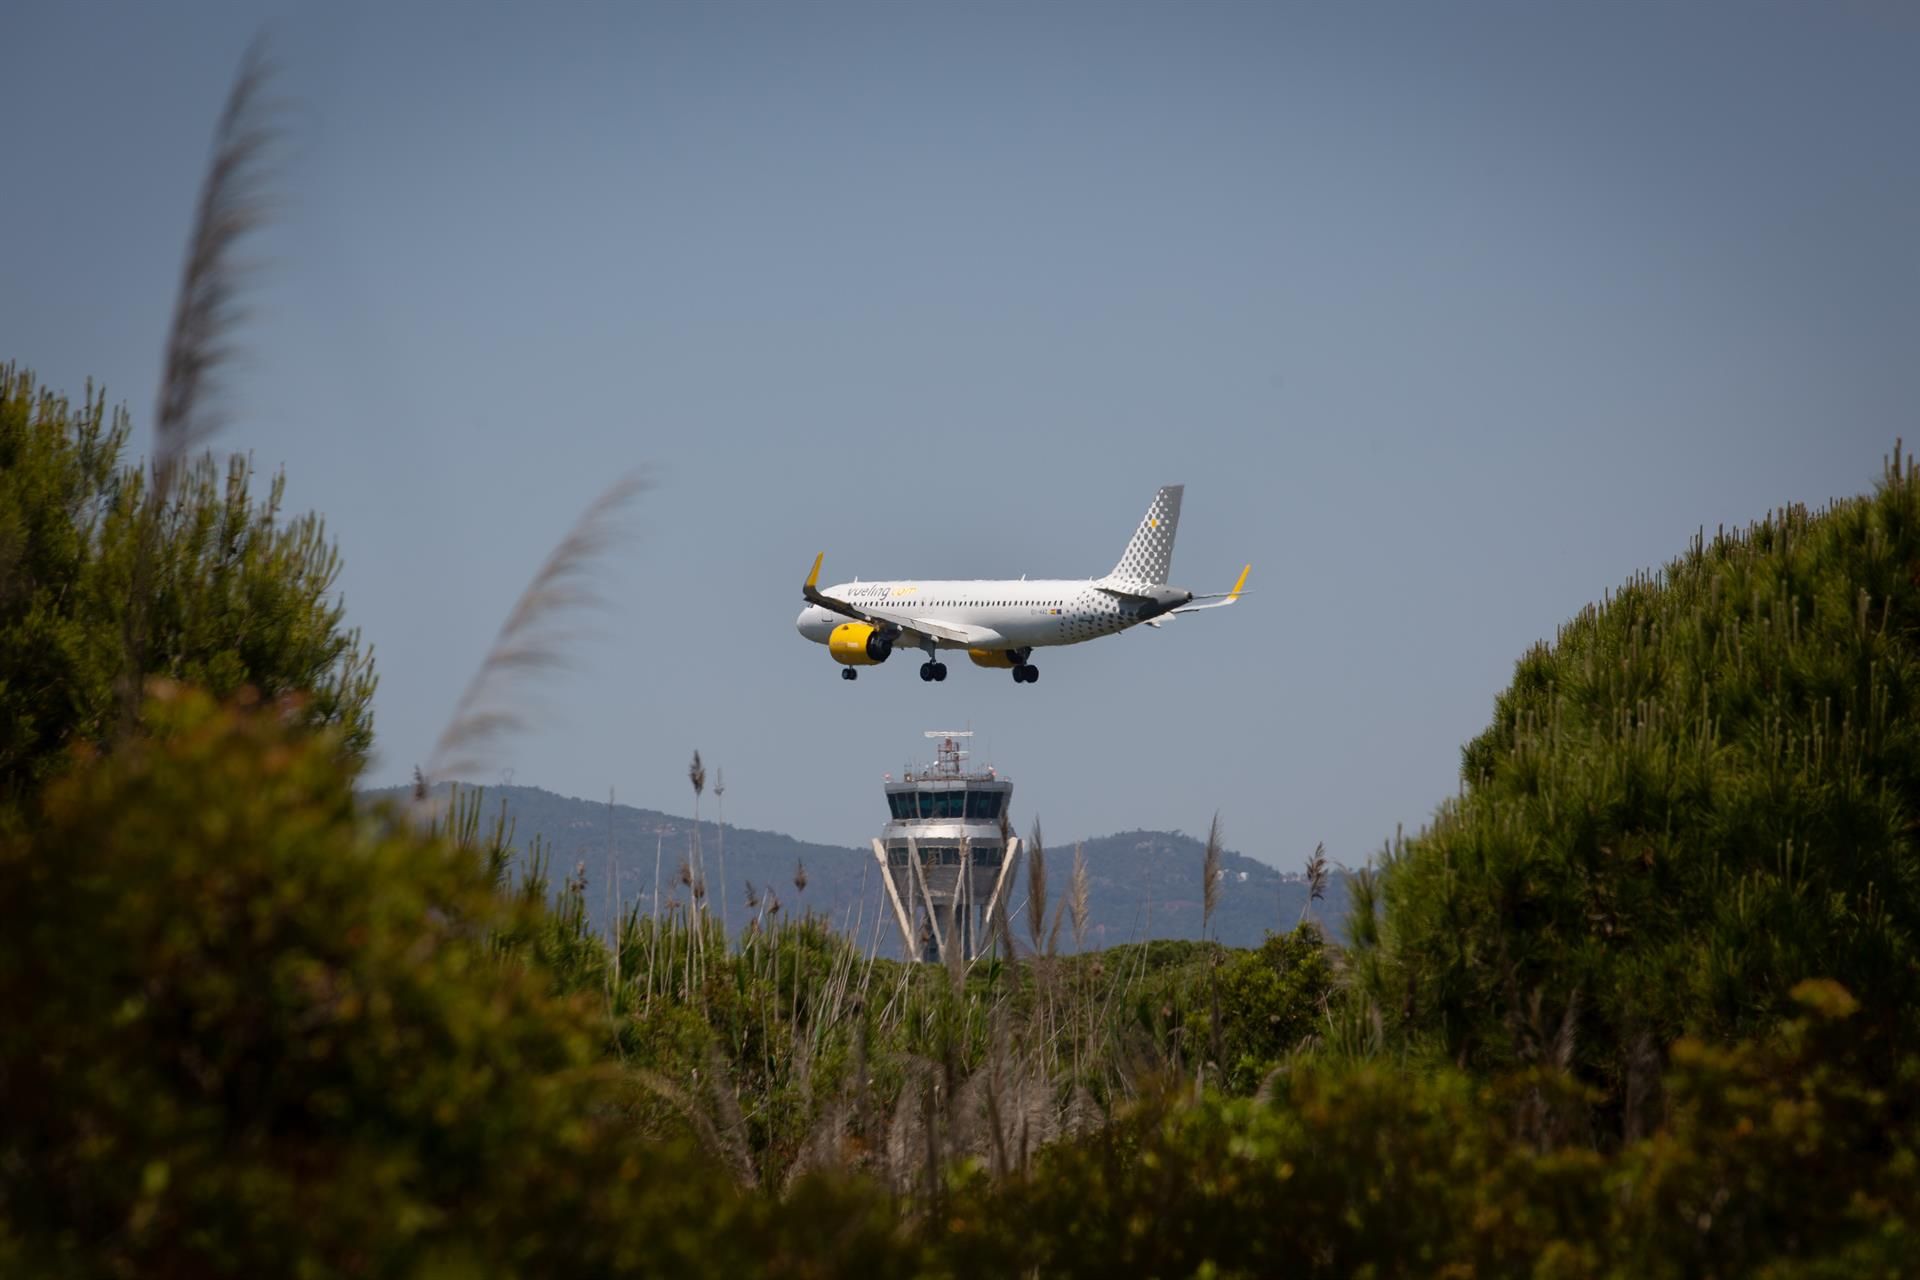 Un avión aterriza en el aeropuerto de Josep Tarradellas Barcelona-El Prat, cerca del espacio protegido natural de La Ricarda / Foto: EP